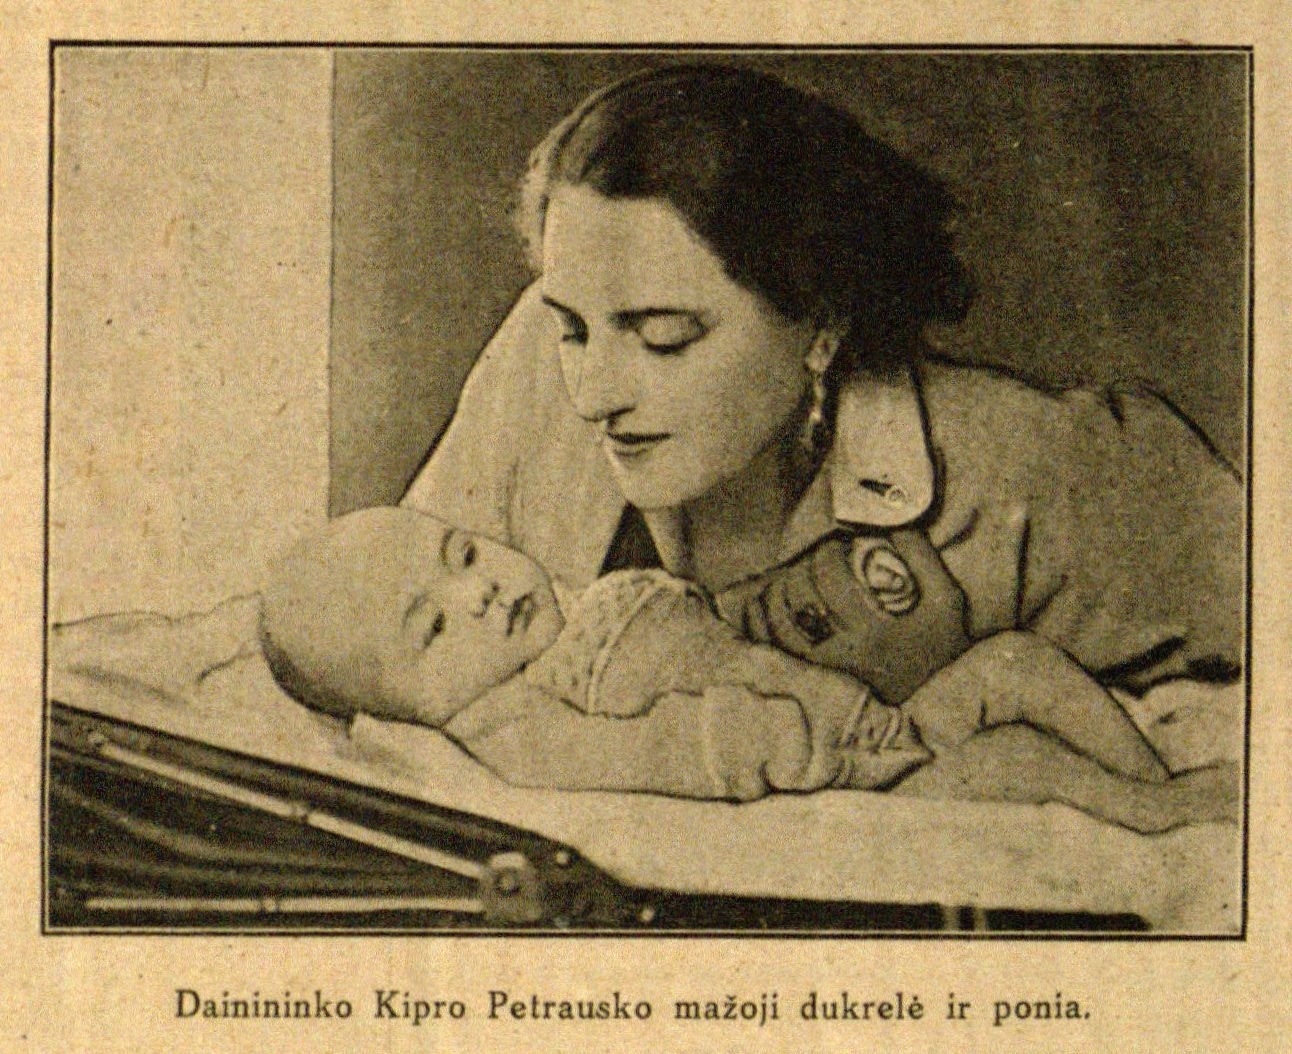 Dainininko Kipro Petrausko mažoji dukrelė ir ponia: [dramos artistė E. Žalinkevičaitė-Petrauskienė] // Naujas žodis. – 1930, Nr. 3, p. 67.